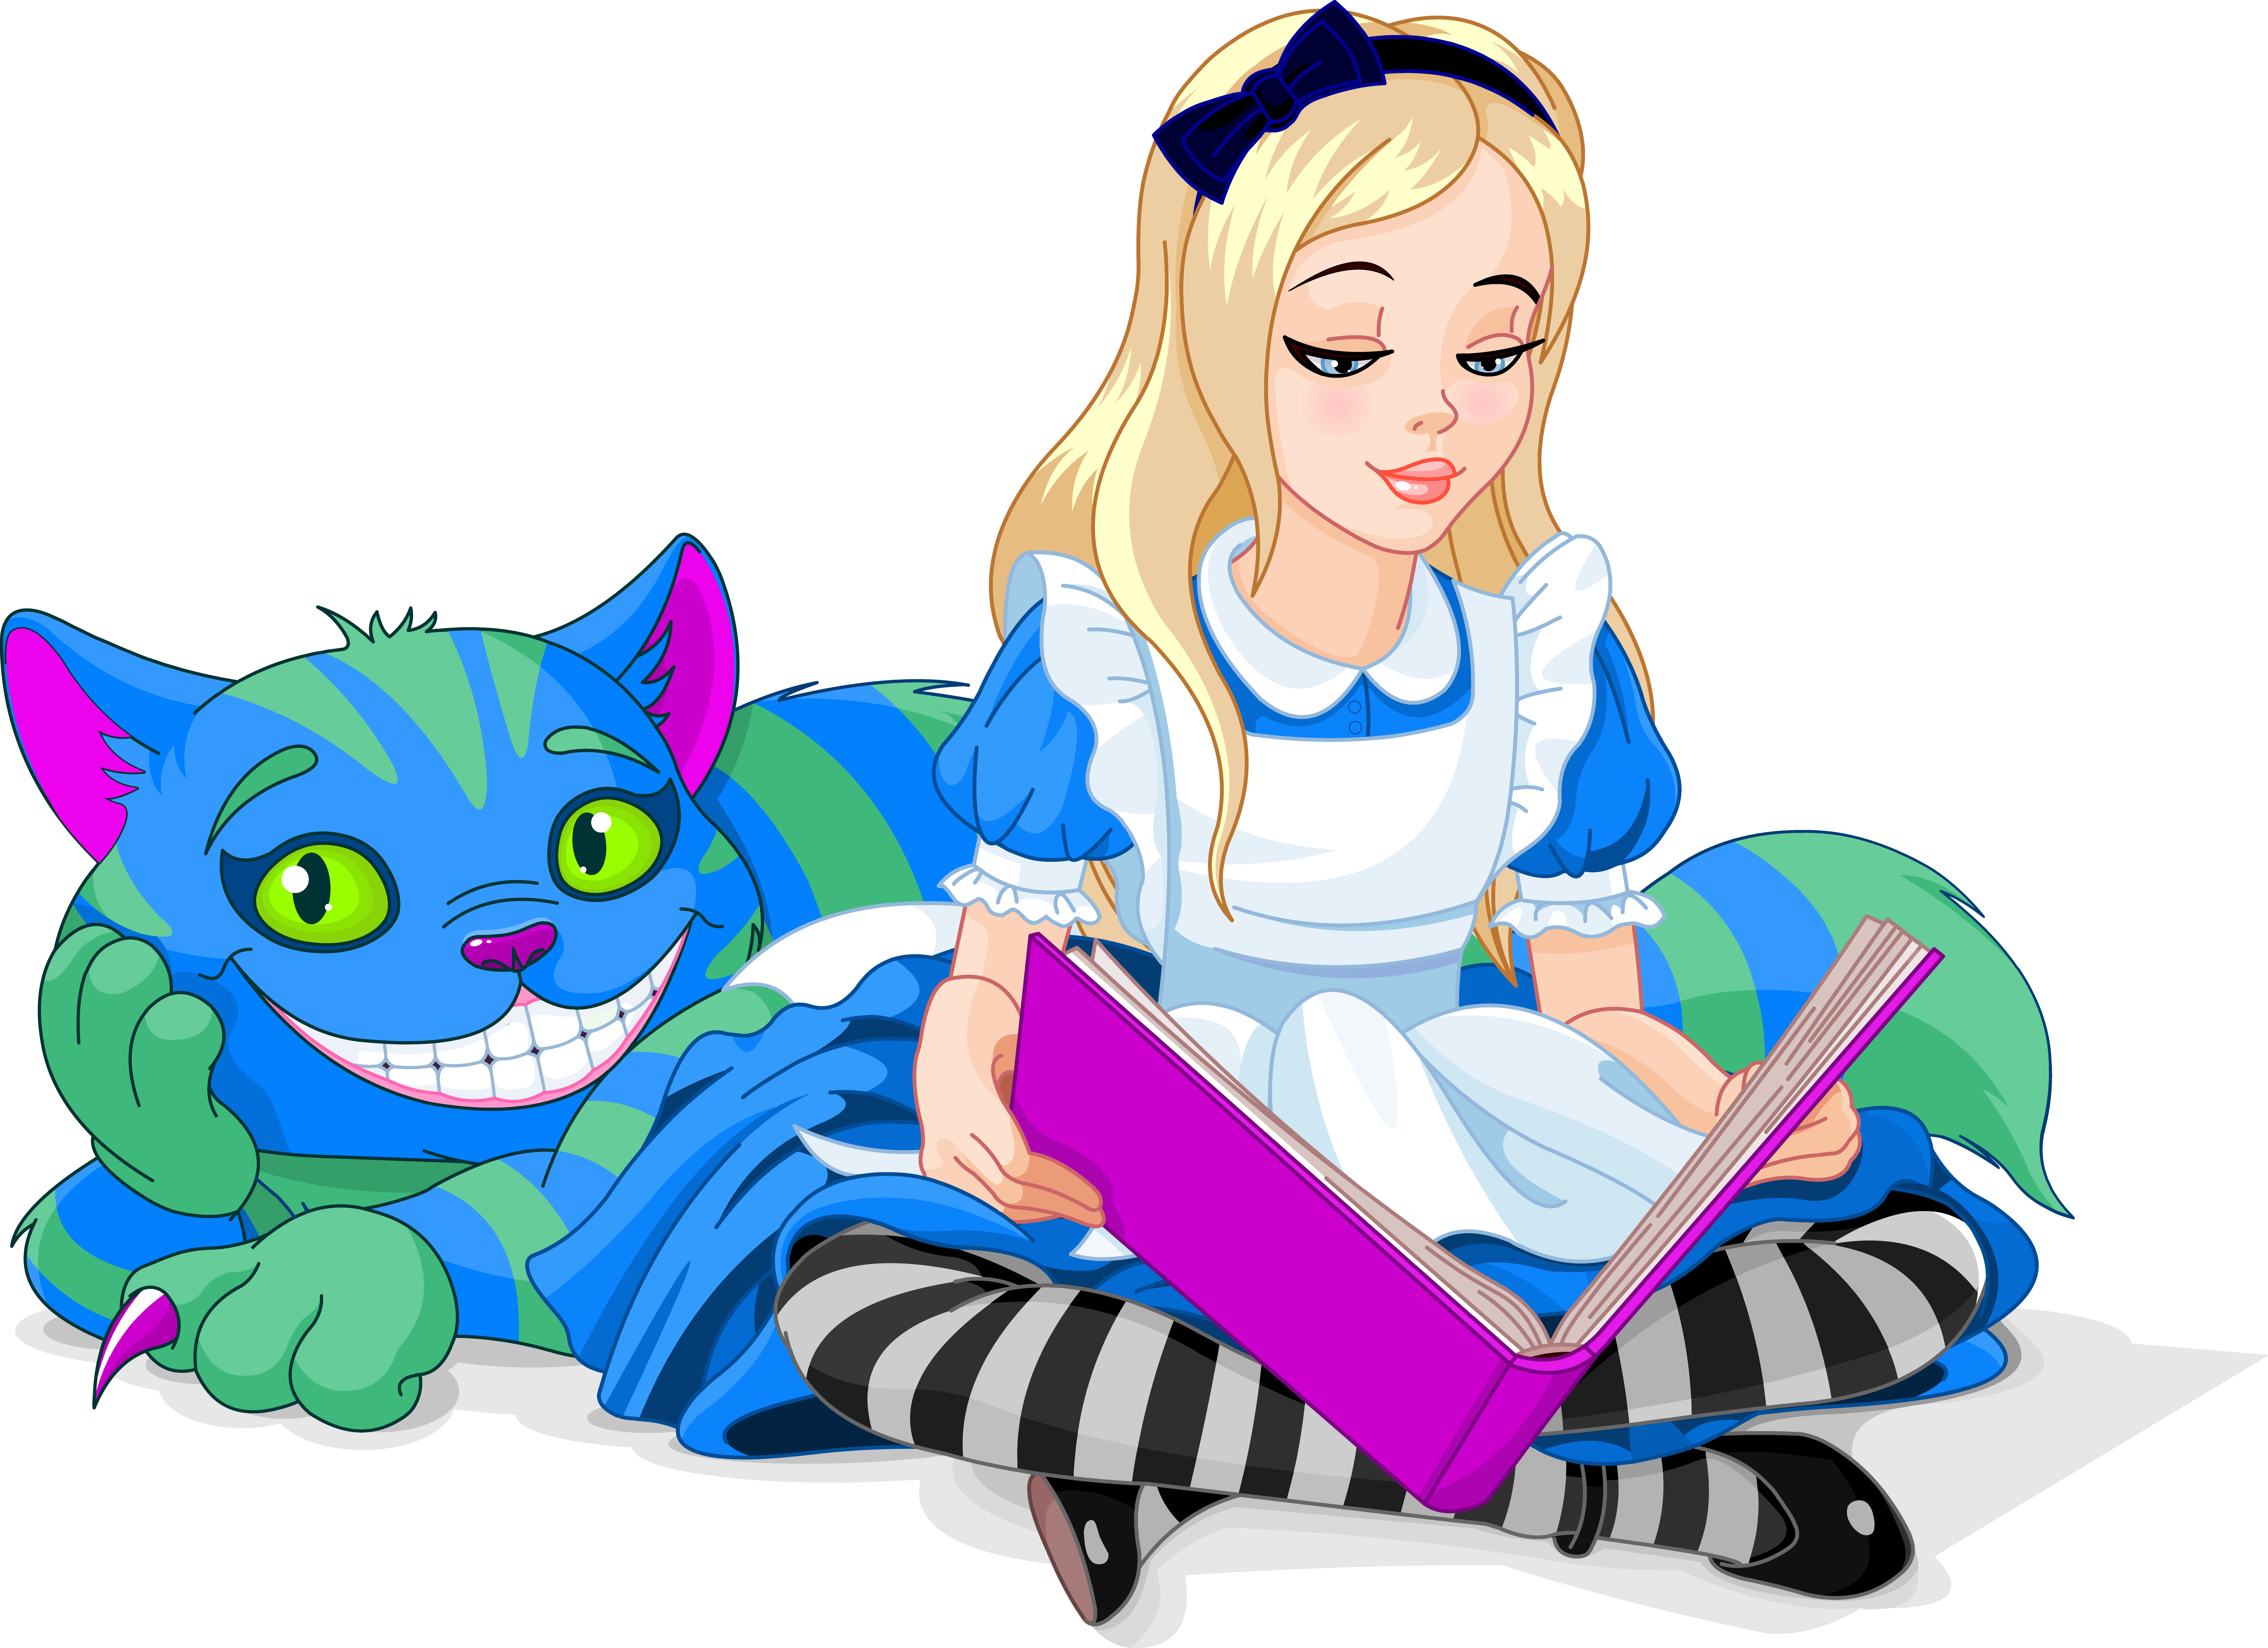 Коты персонажи книг. Алиса в стране чудес Чеширский кот и Алиса. Алиса и кот Чешир в стране чудес. Алиса в стране чудес кот и Алиса. Алиса в стране чудес Алиса читает книгу.